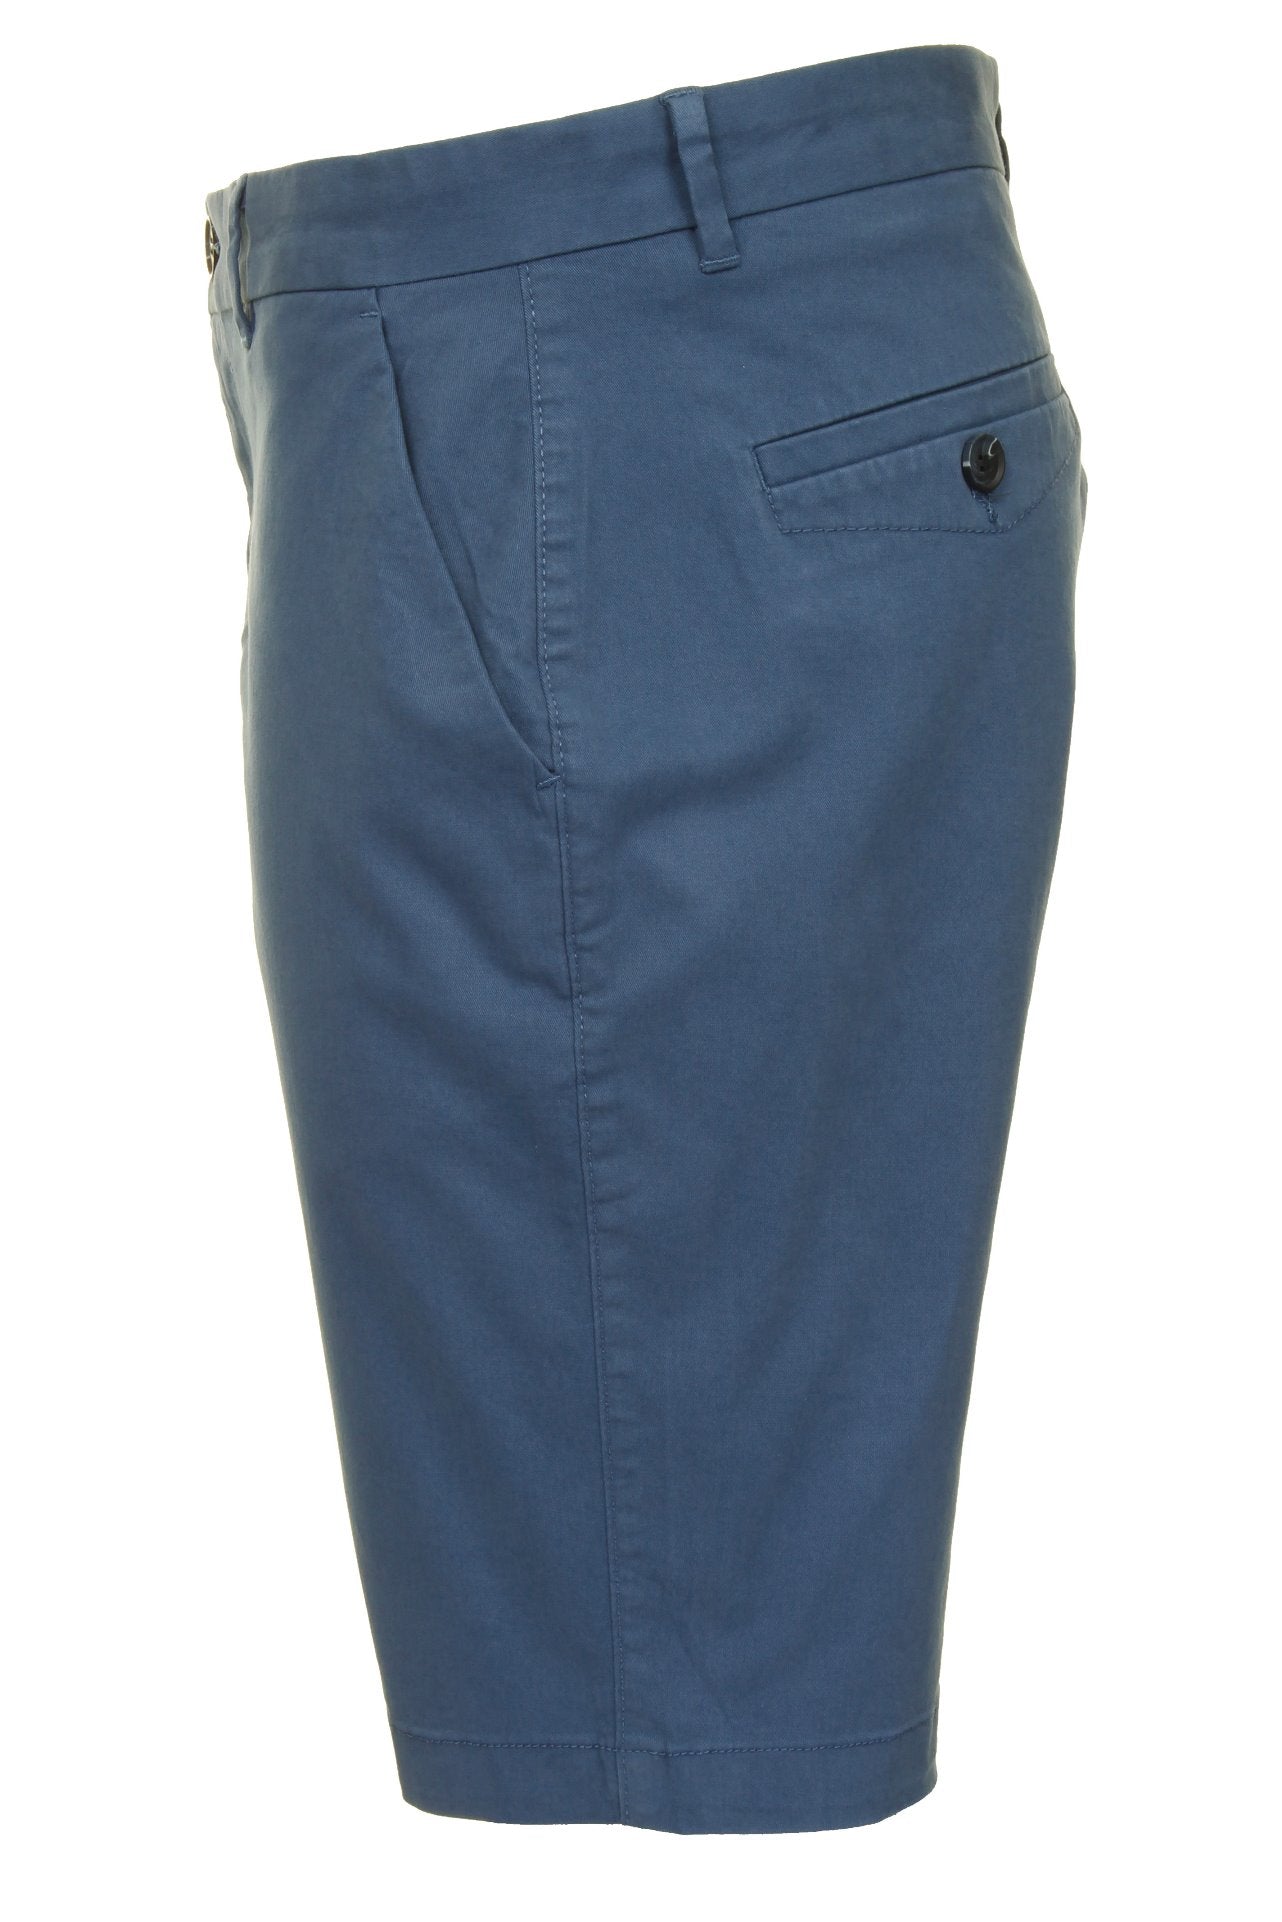 Xact Men's Premium Tailored Stretch Chino Shorts-2